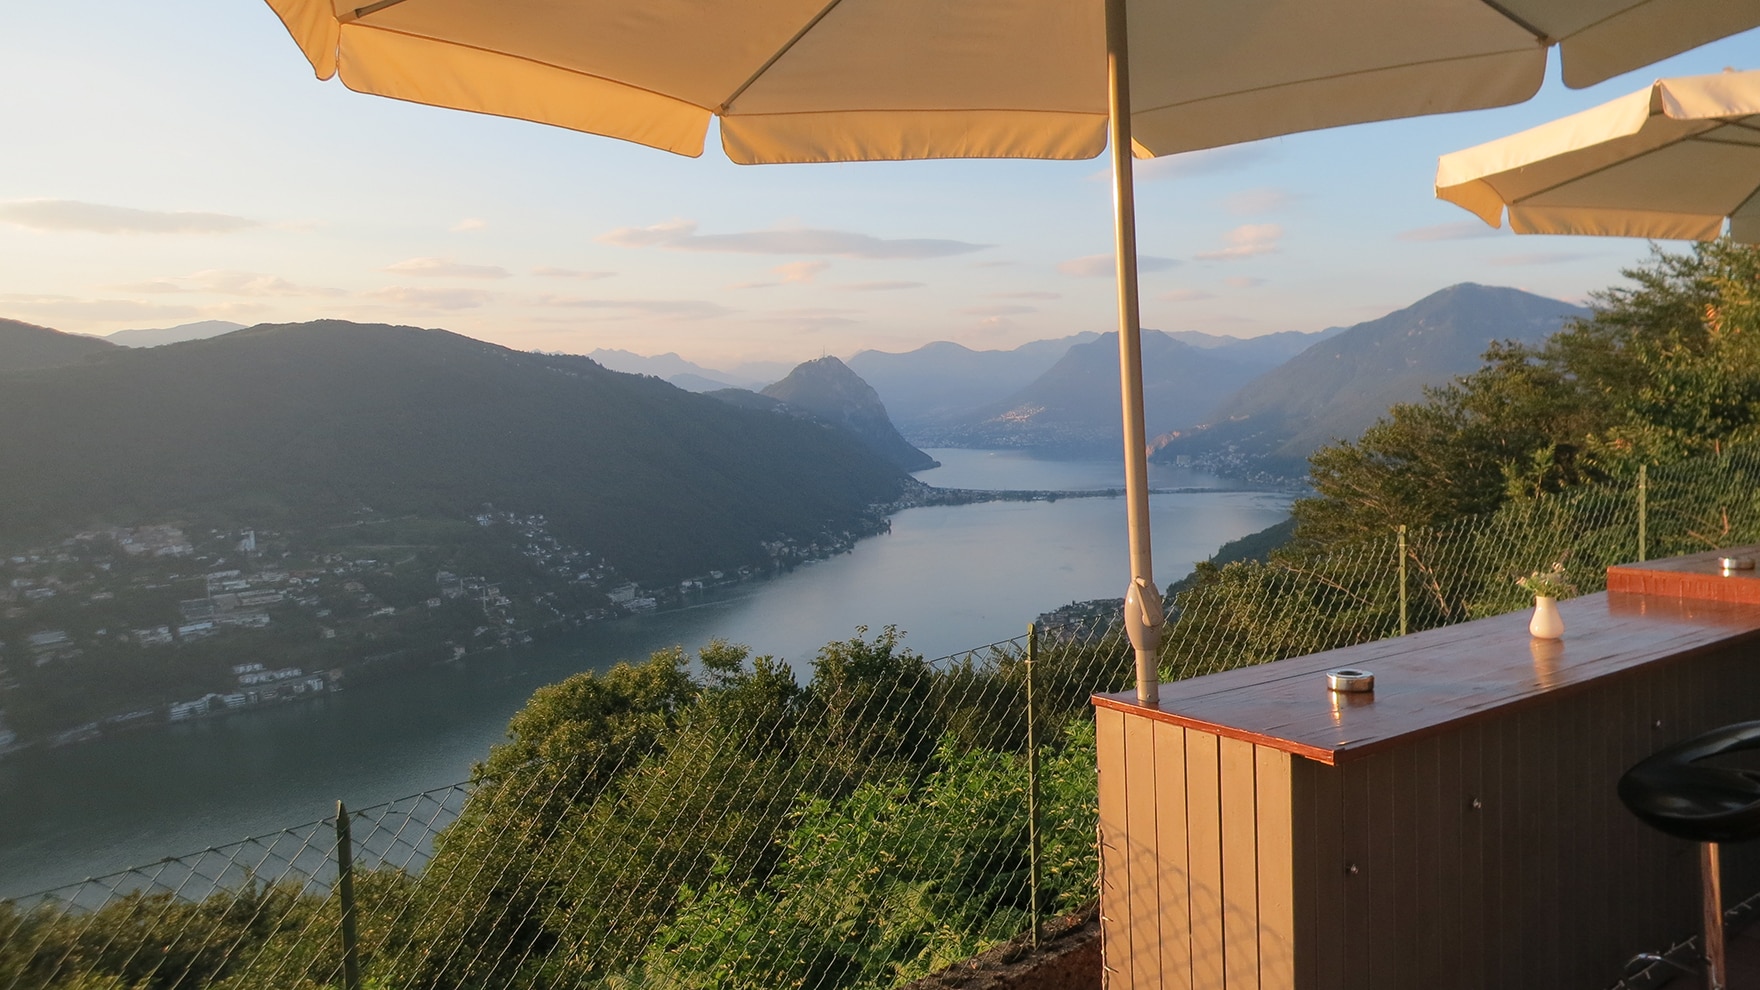 Eine wahre Belohnung ist die eindrückliche Panorama-Terrasse im Hotel Serpiano.